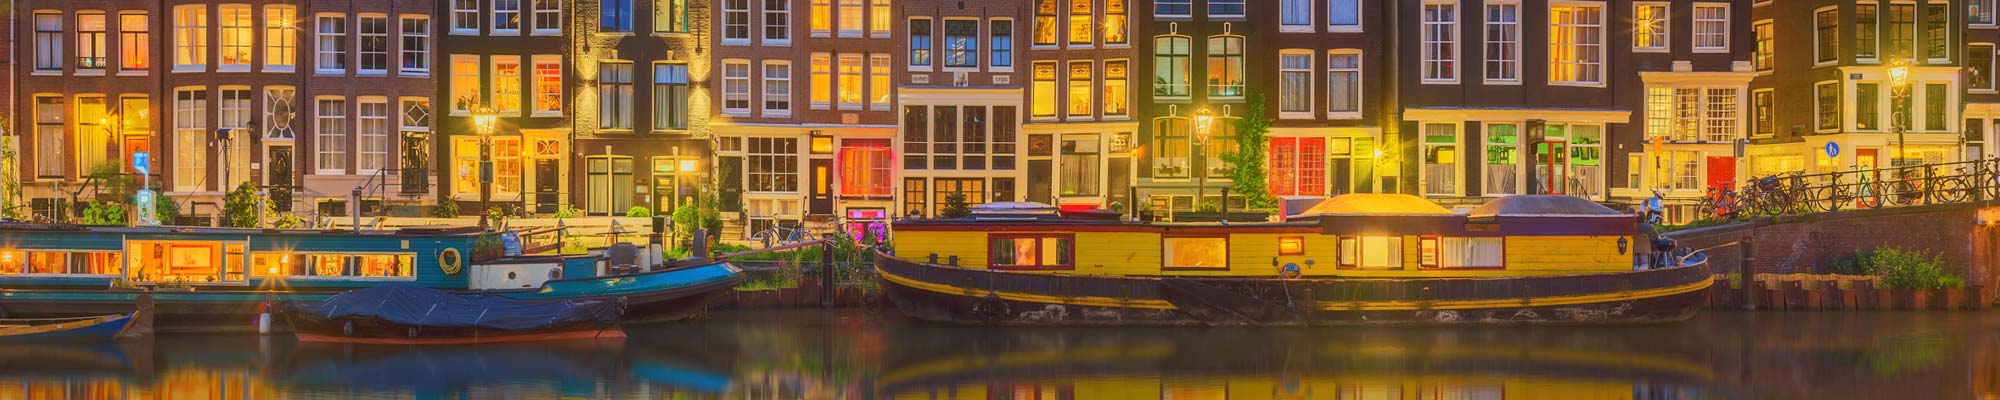 Grachten auf Fluss vor Häusern - als Symbolbild für den Paketversand nach Niederlande und Amsterdam 